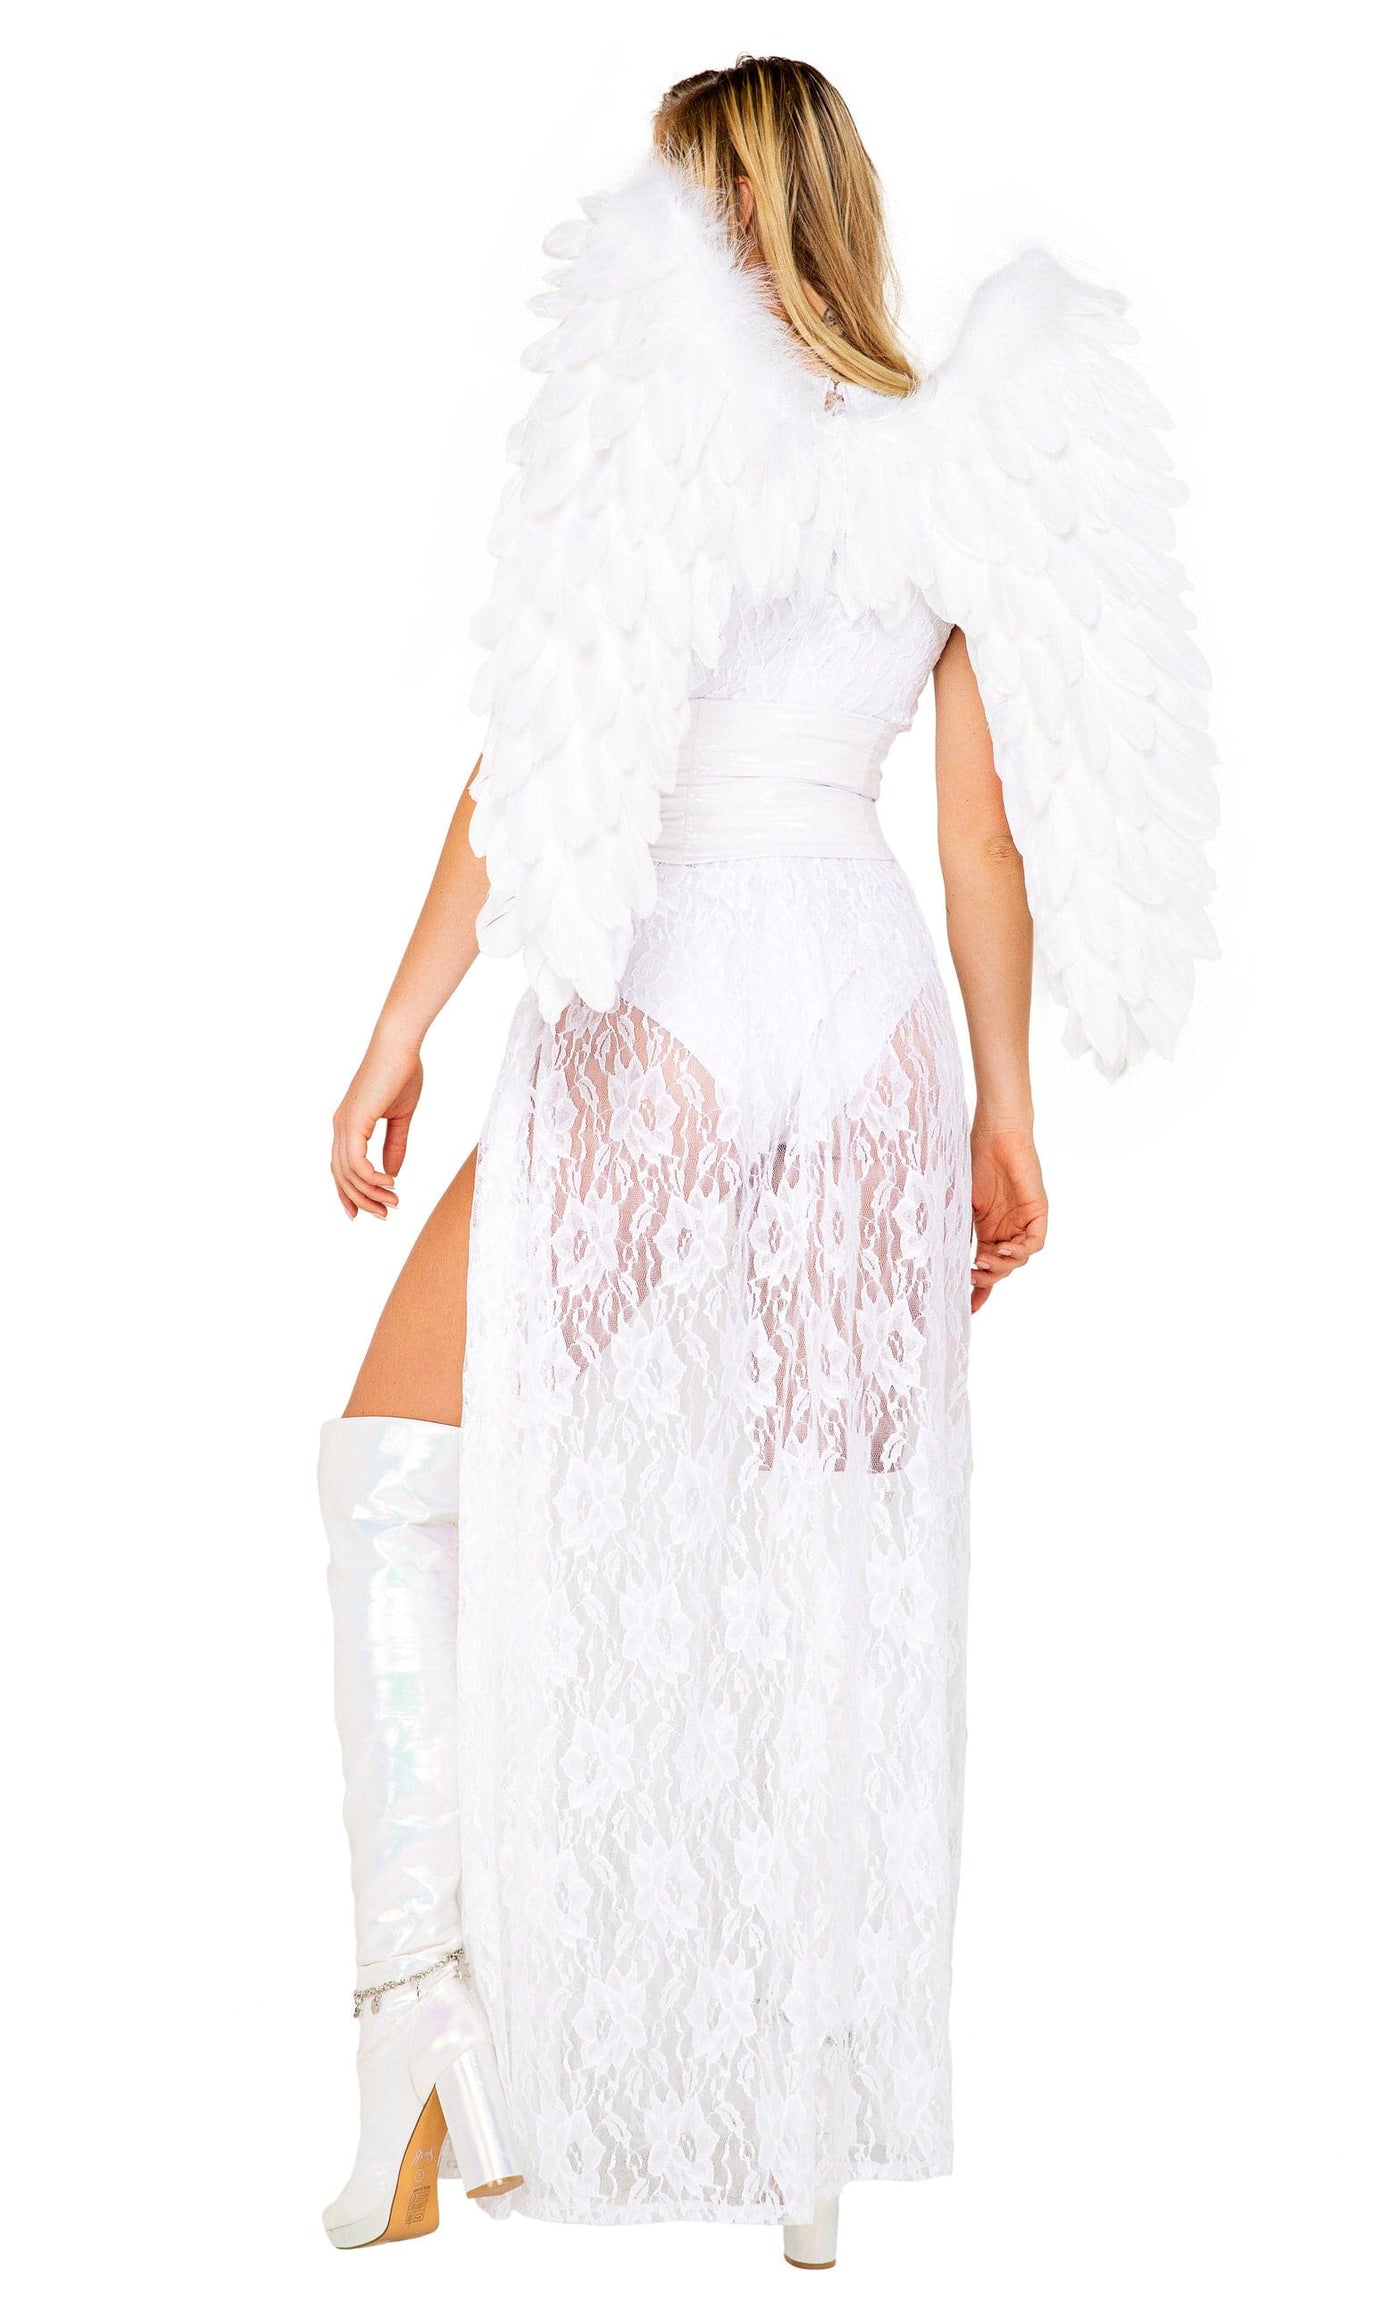 2pc. Heaven's Kiss Angel Women's Costume - For Love of Lingerie